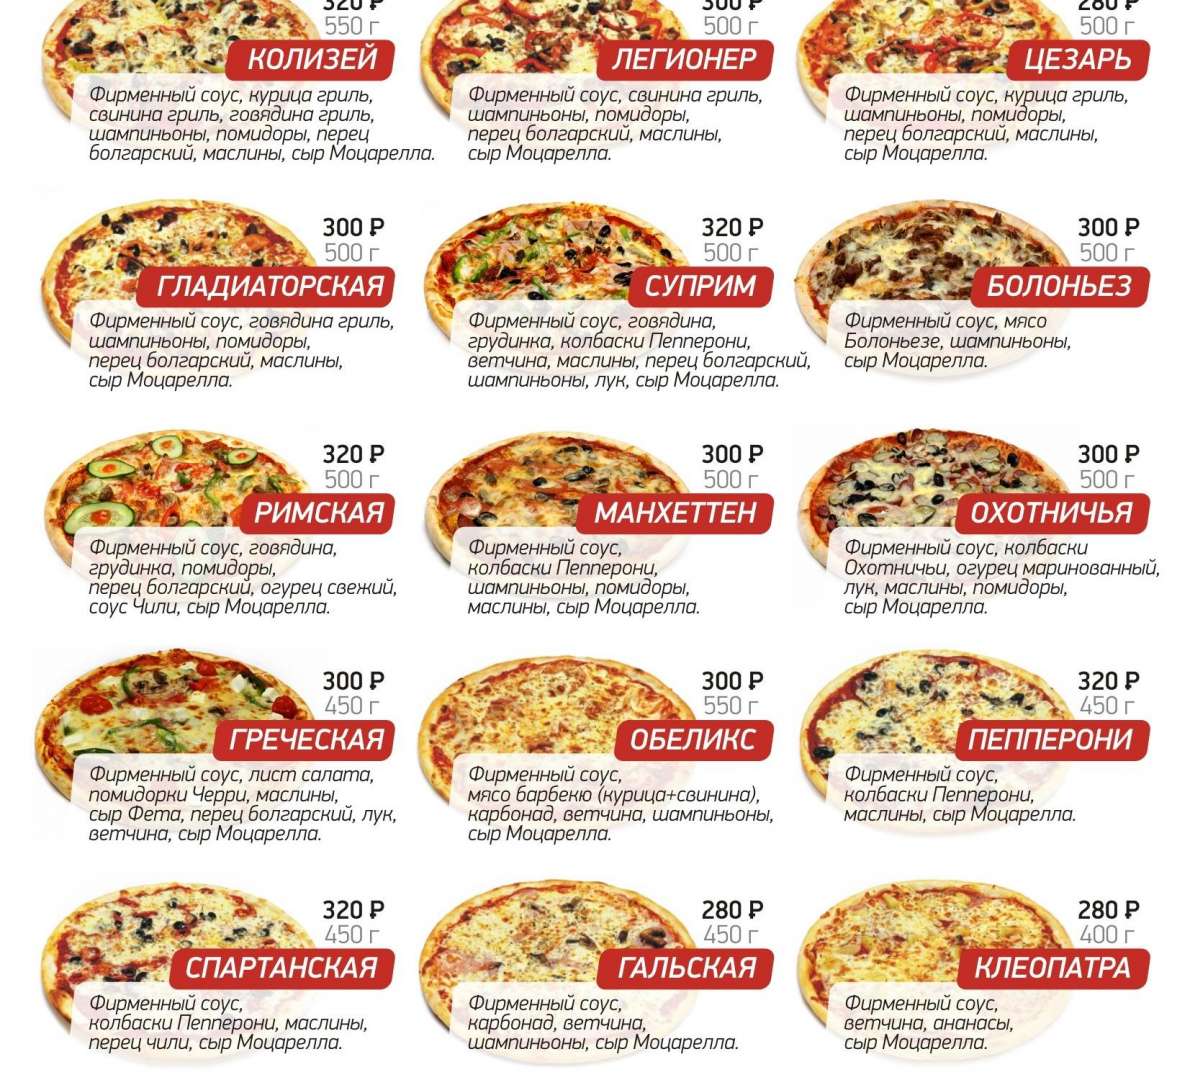 ассортимент пиццы в мир пиццы фото 102